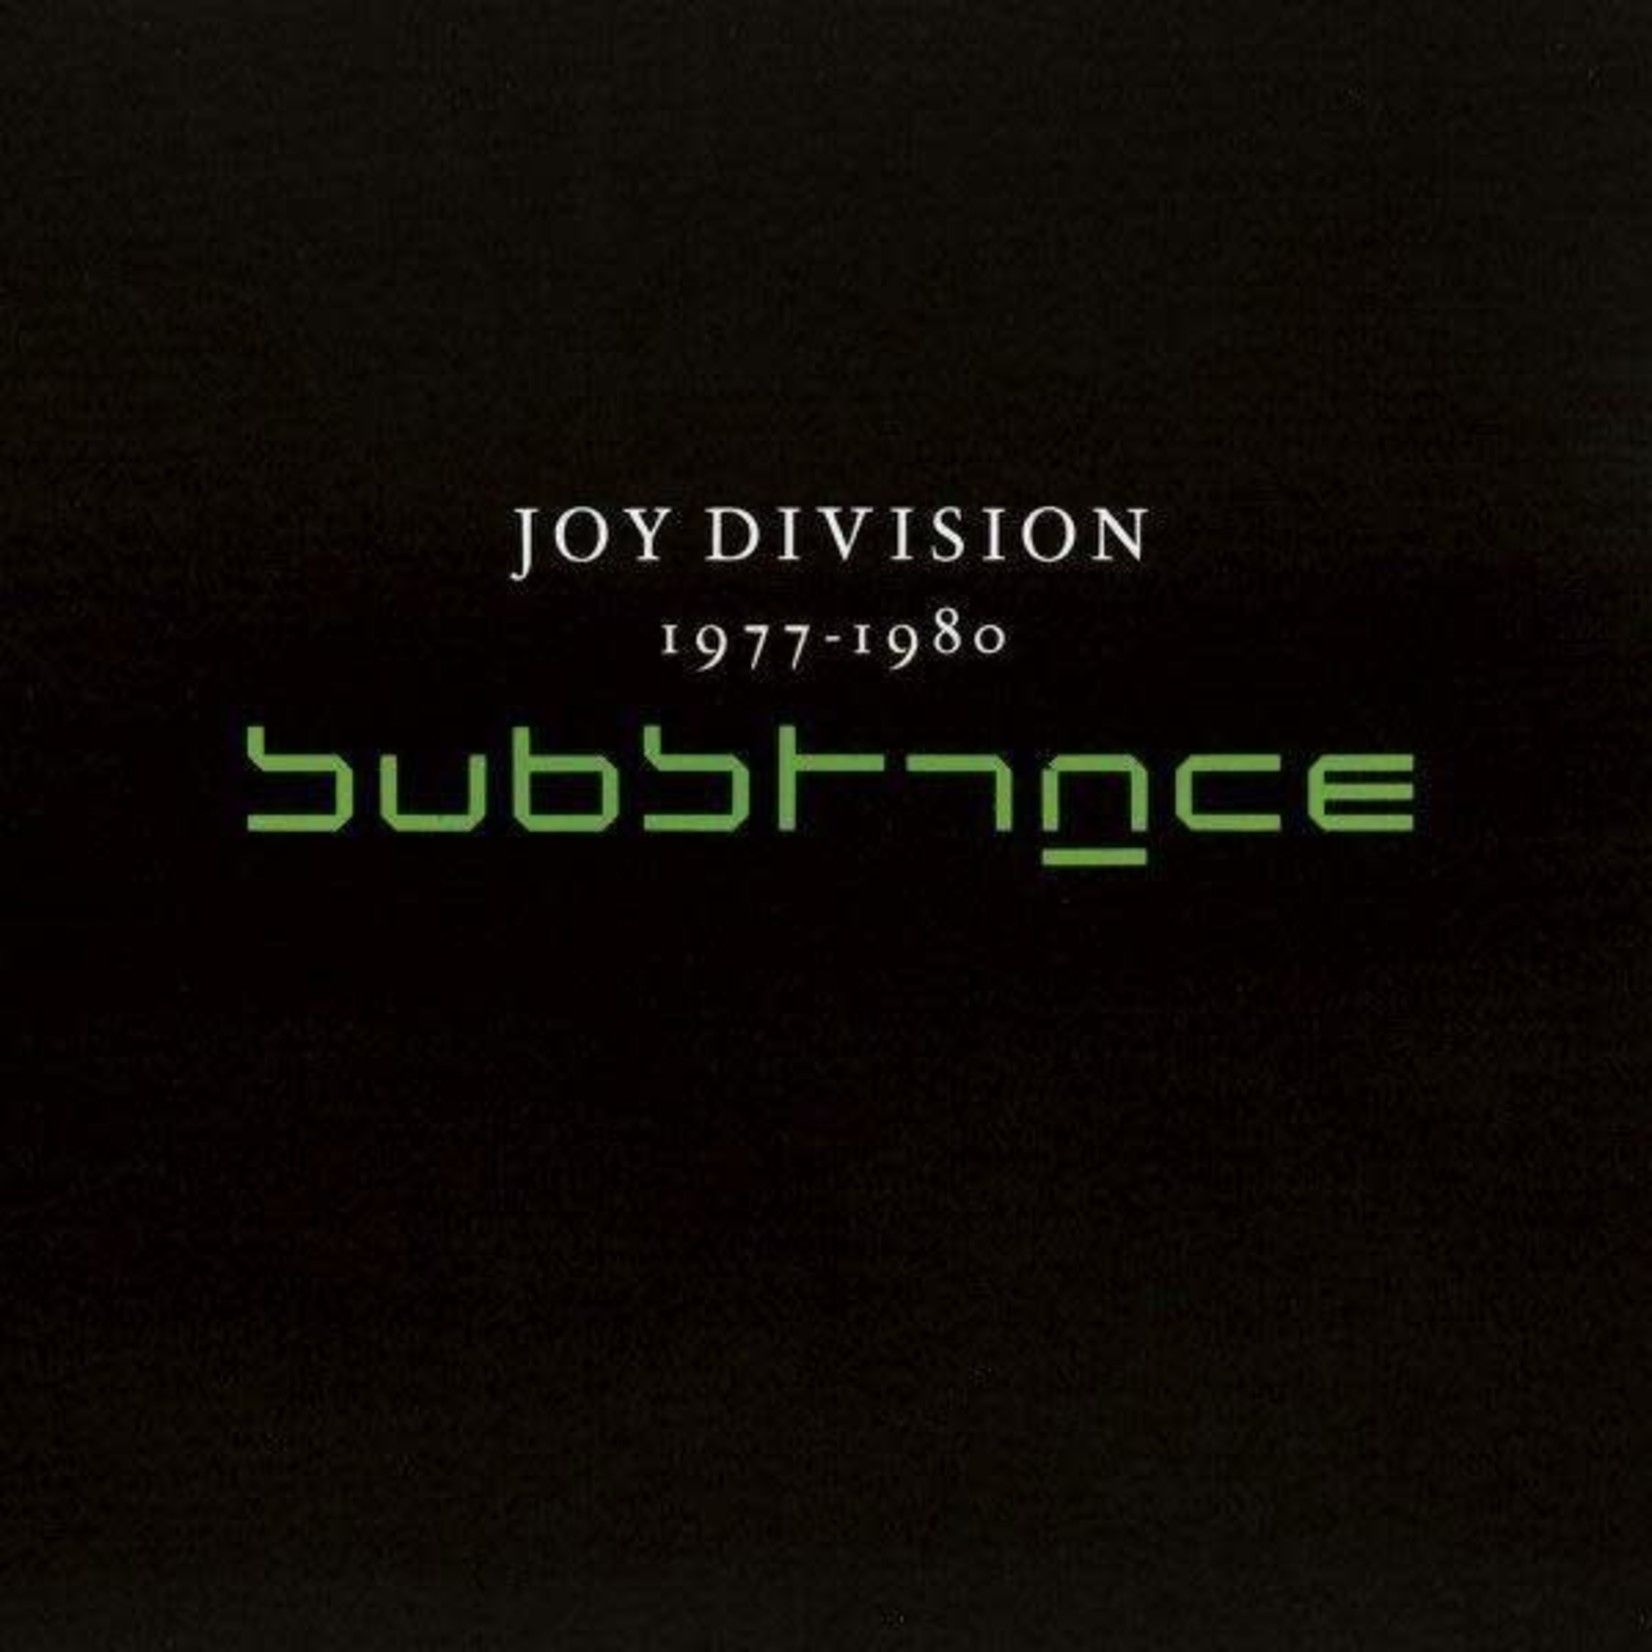 [New] Joy Division - Substance (2LP)